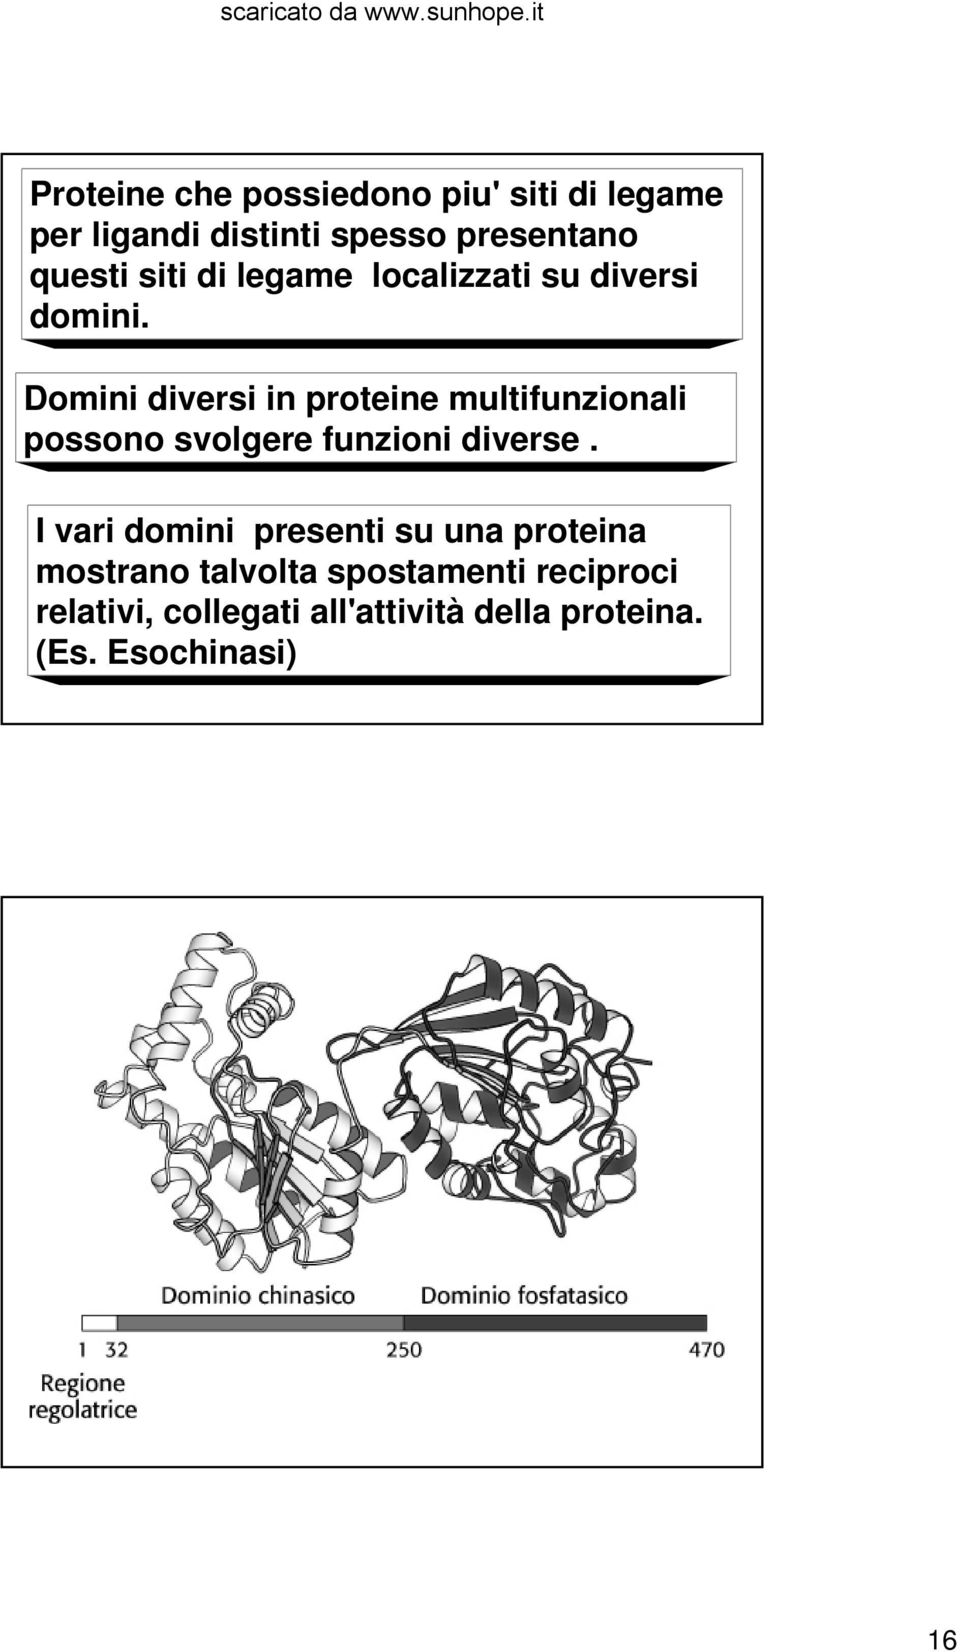 Domini diversi in proteine multifunzionali possono svolgere funzioni diverse.